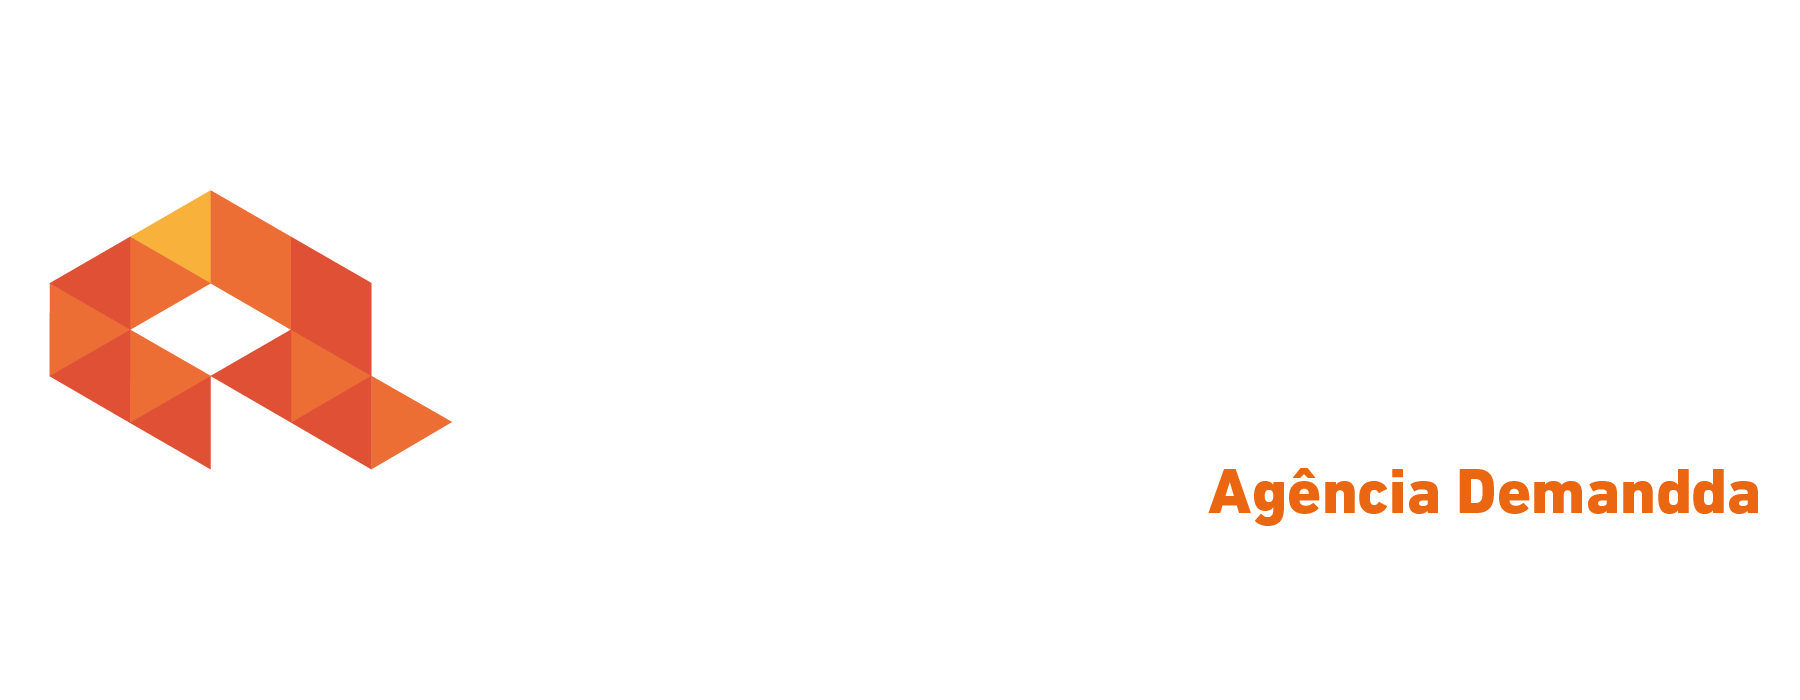 Logo crédito real Crédito Real Demandda